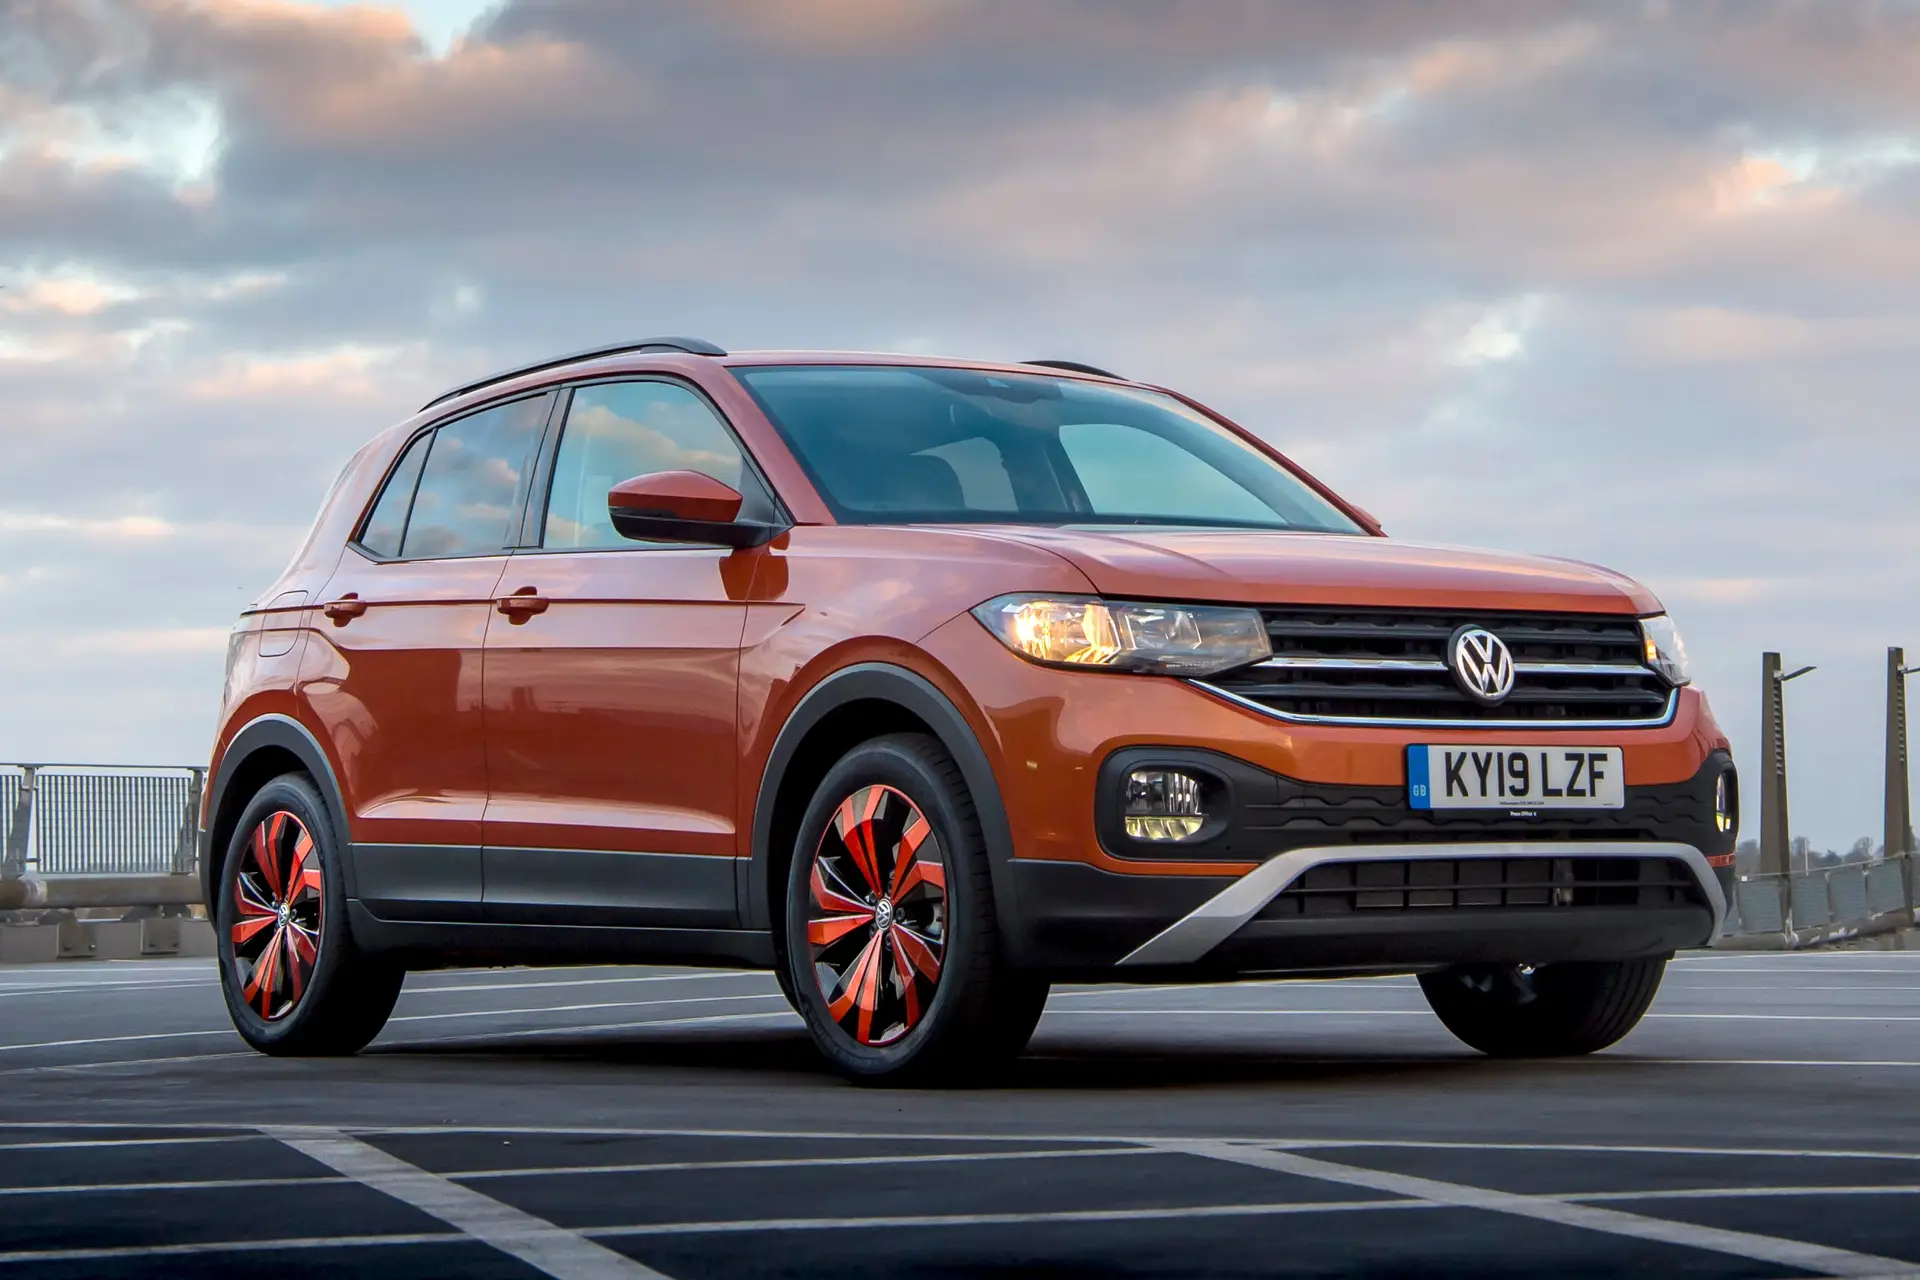 This new Volkswagen T-Cross has been sold recently / is not